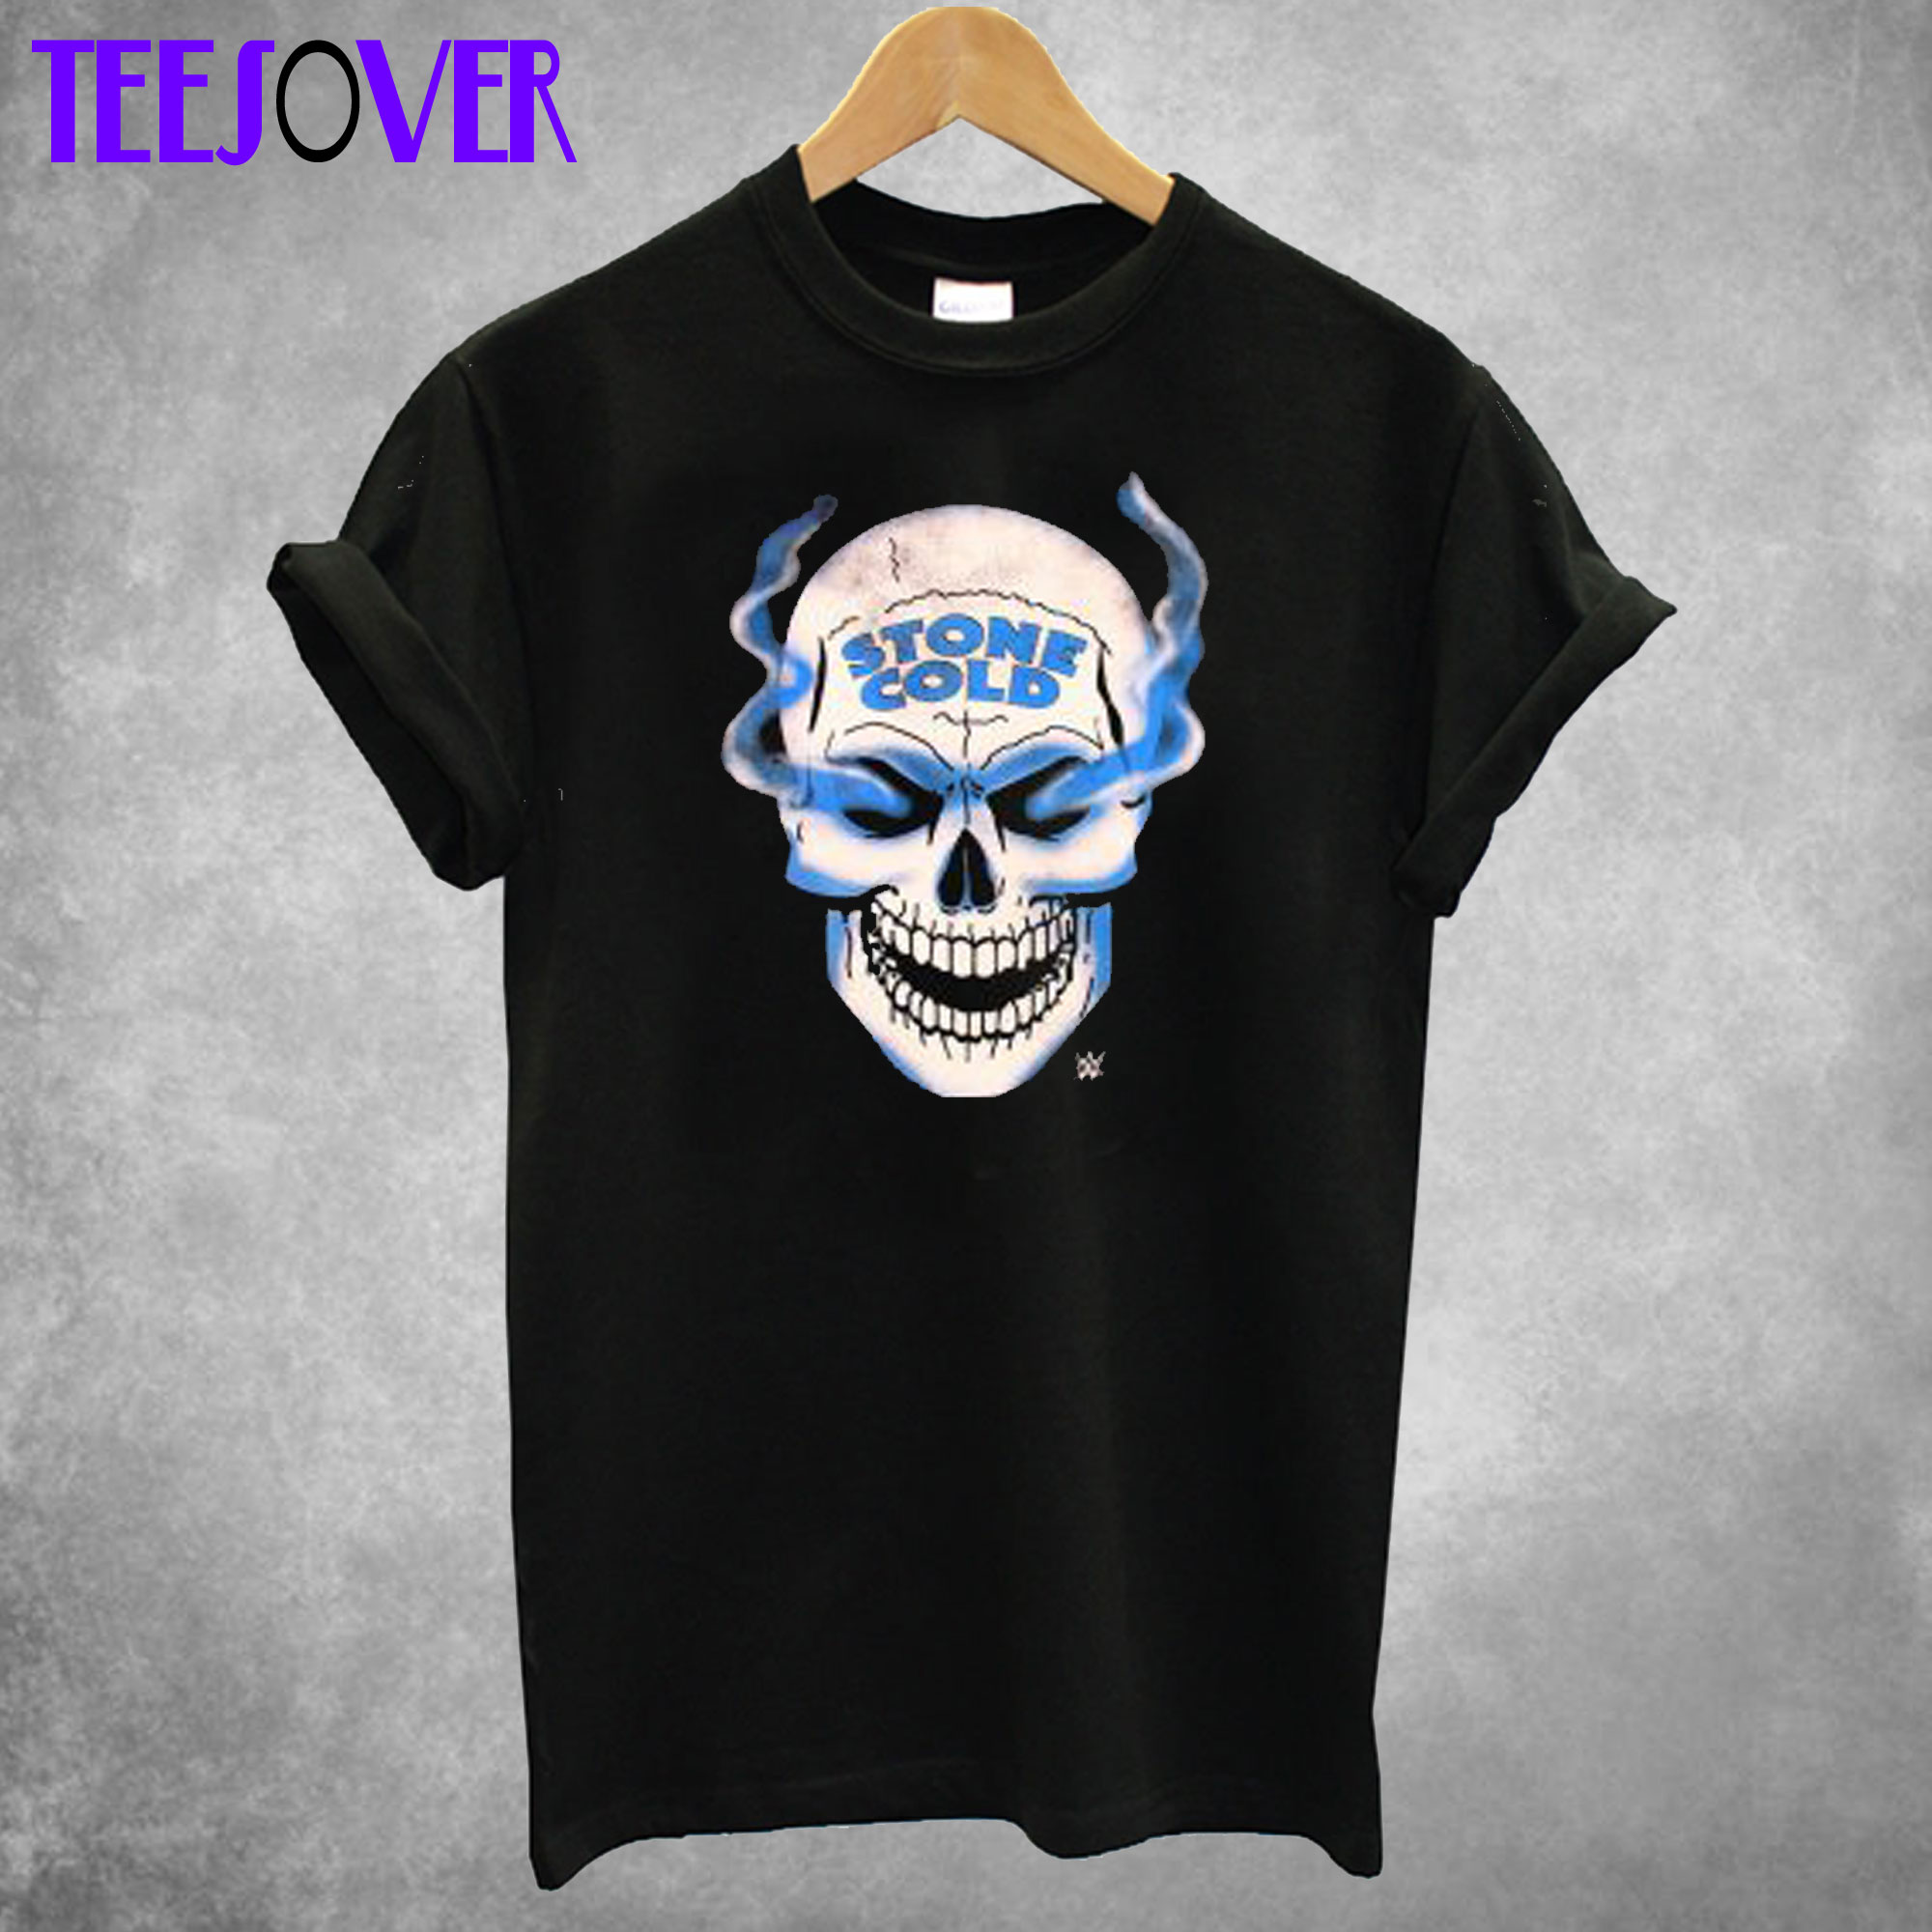 WWE Stone Cold Austin 316 Smoke Skull T-Shirt